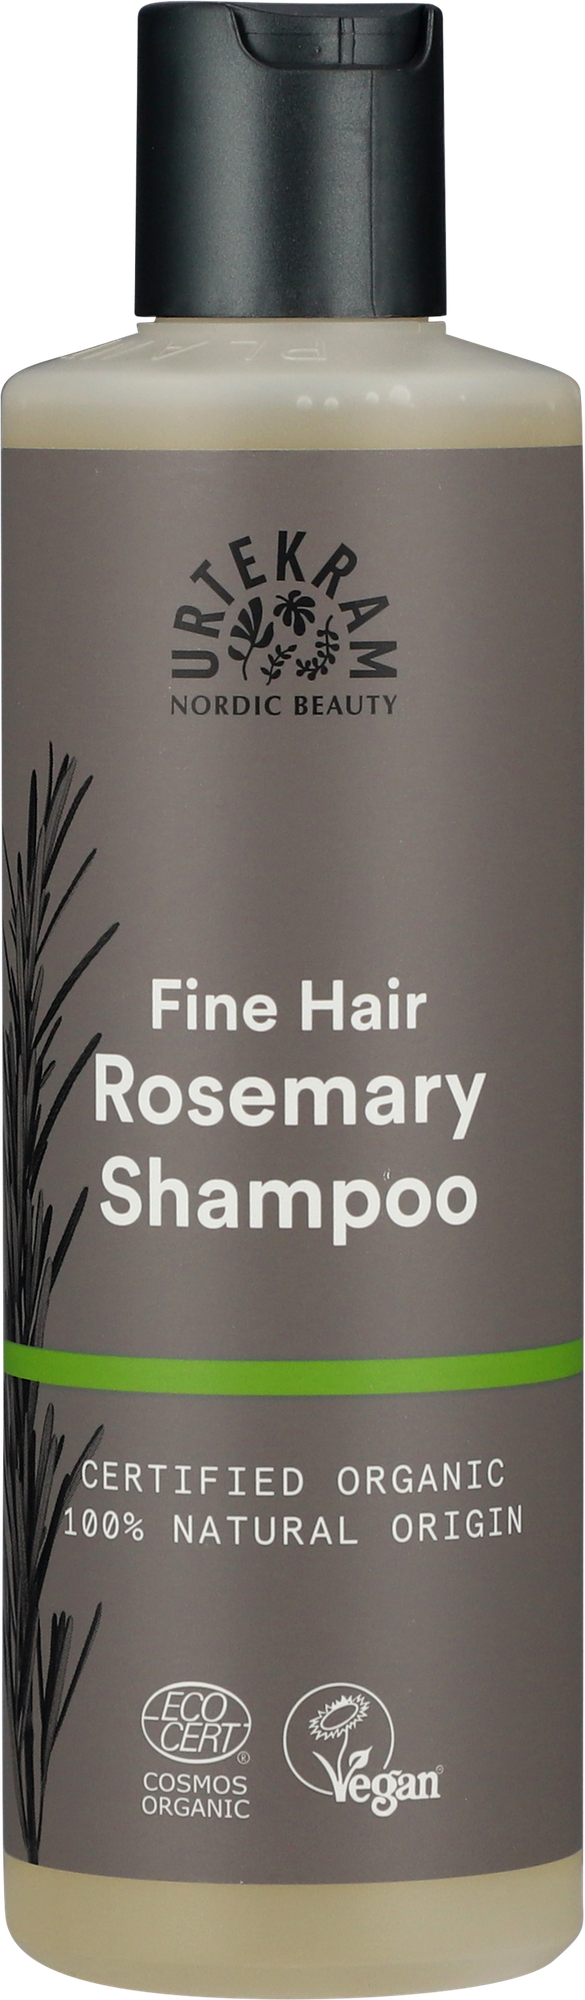 Шампунь для тонких волос "Розмарин", натуральный, Urtekram, 250 мл